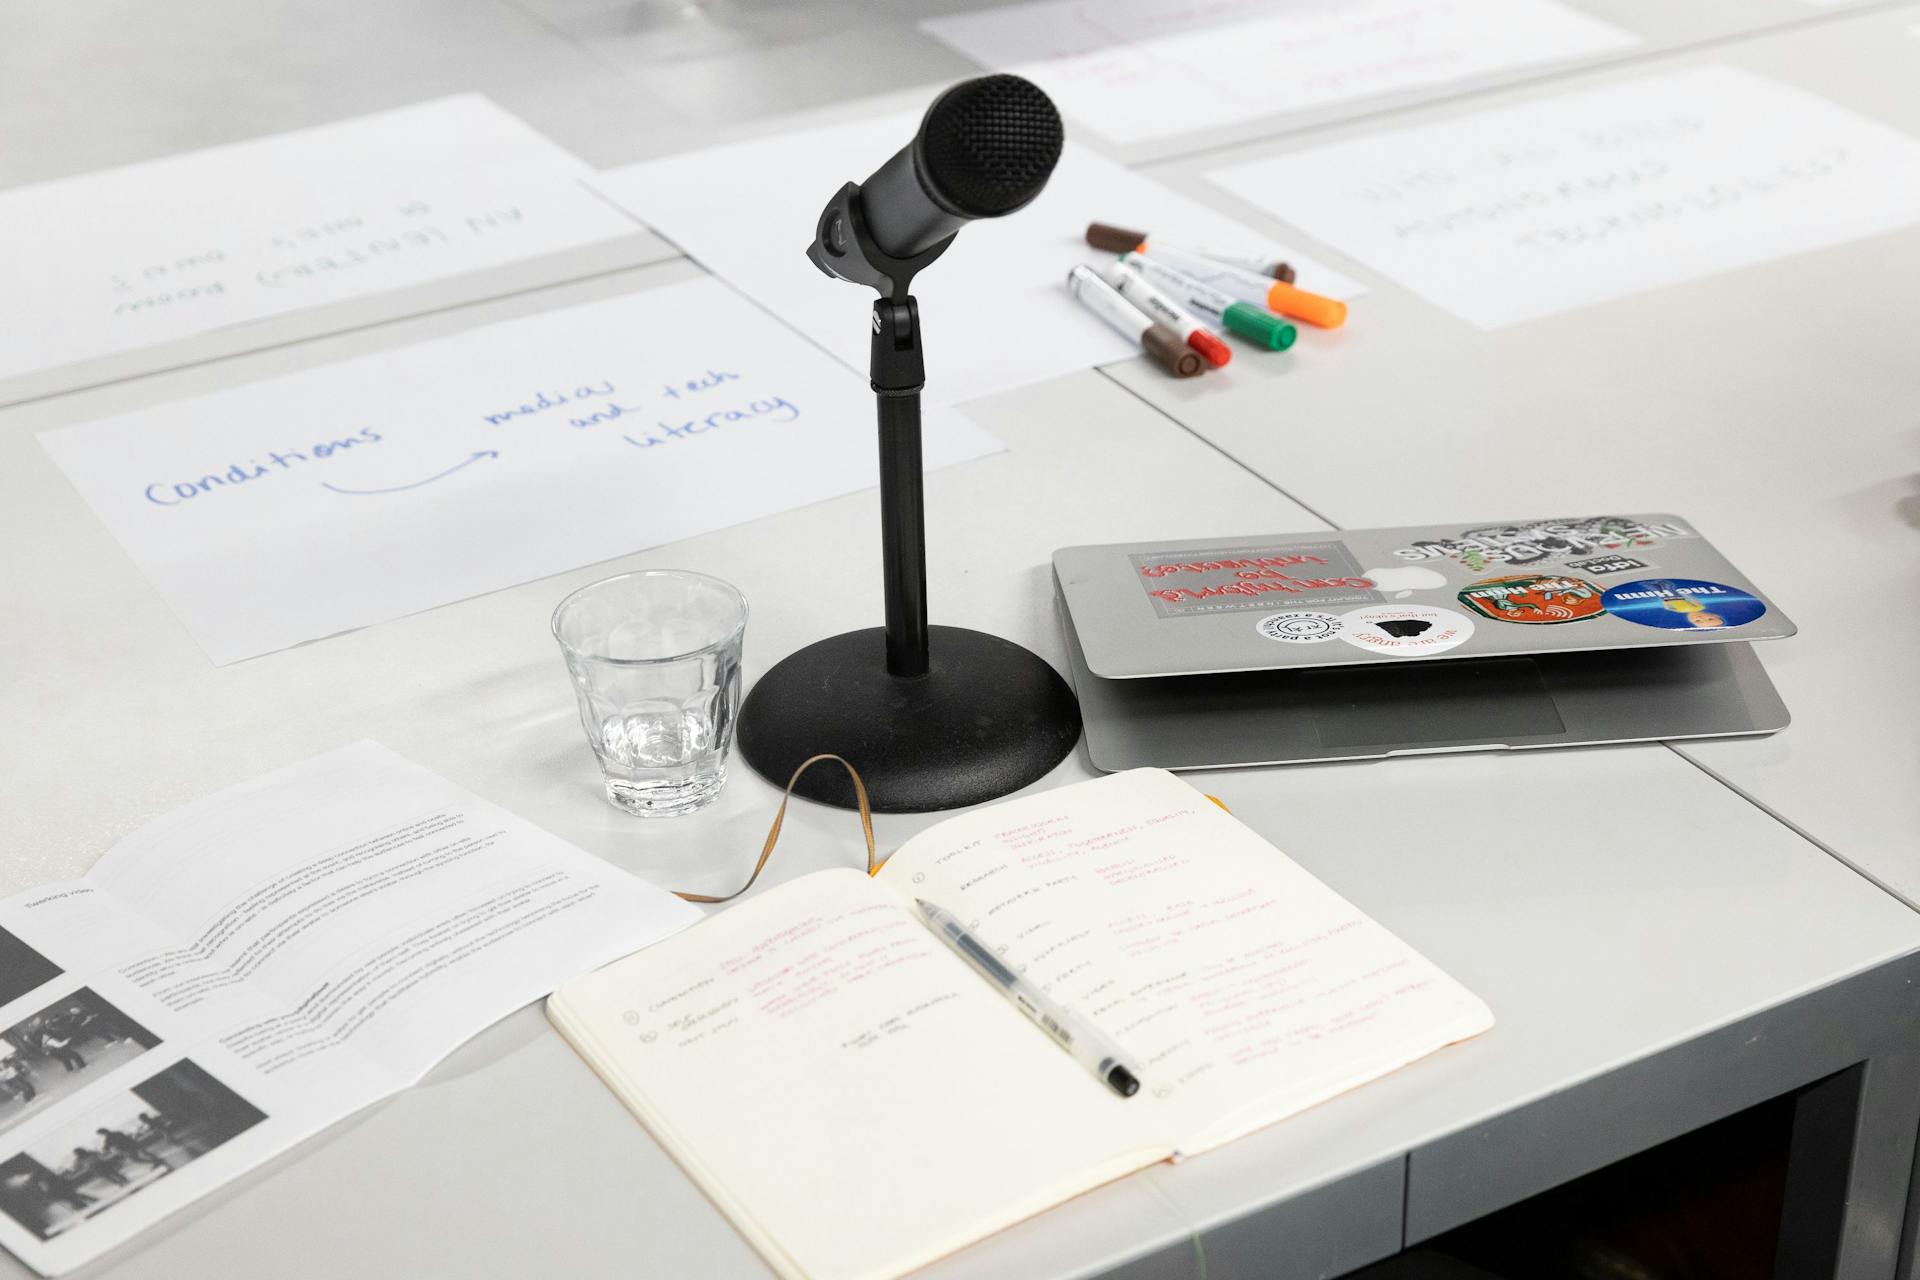  Rommelige witte tafel met beschreven papier, gekleurde markers, een microfoon, glas water en laptop